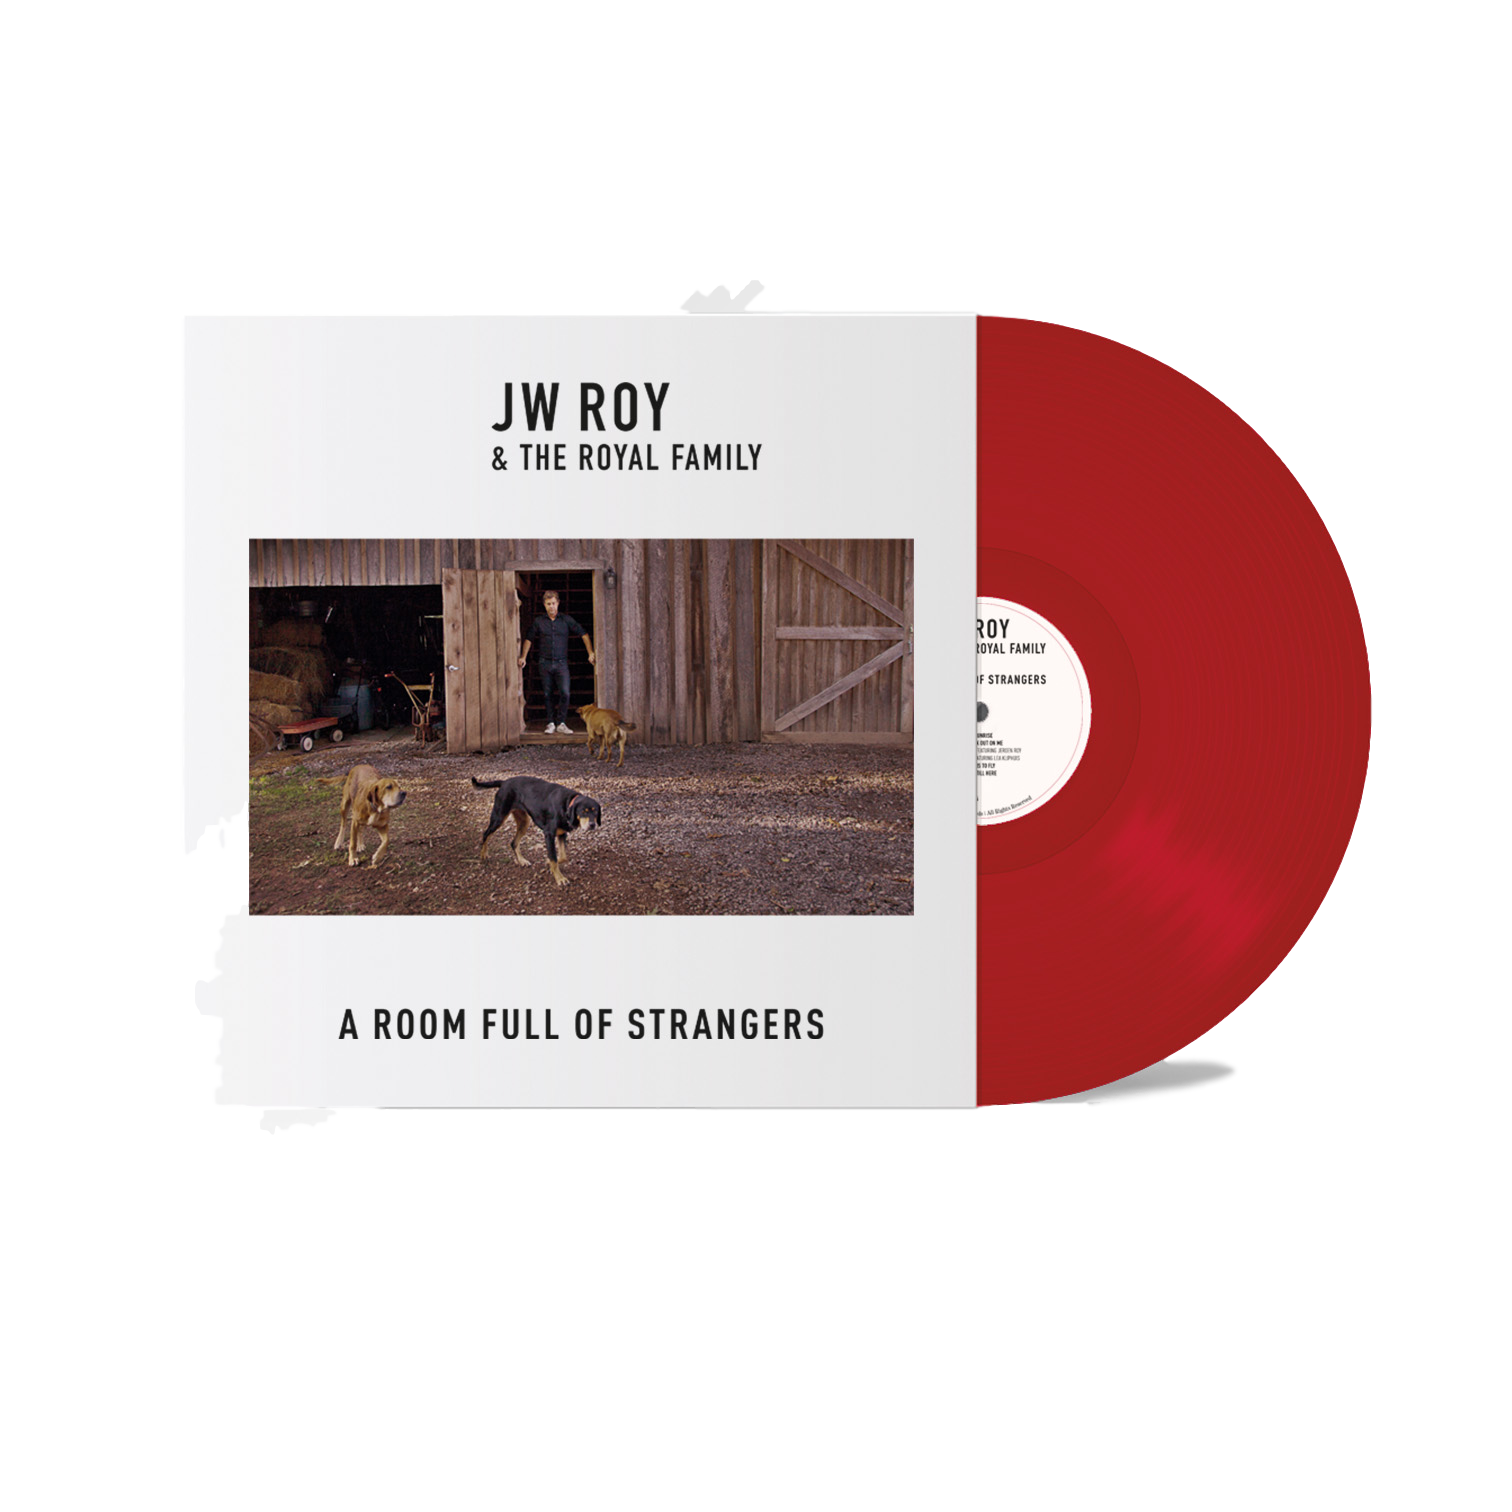 12 fraaie songs op het nieuwe album van J.W. Roy